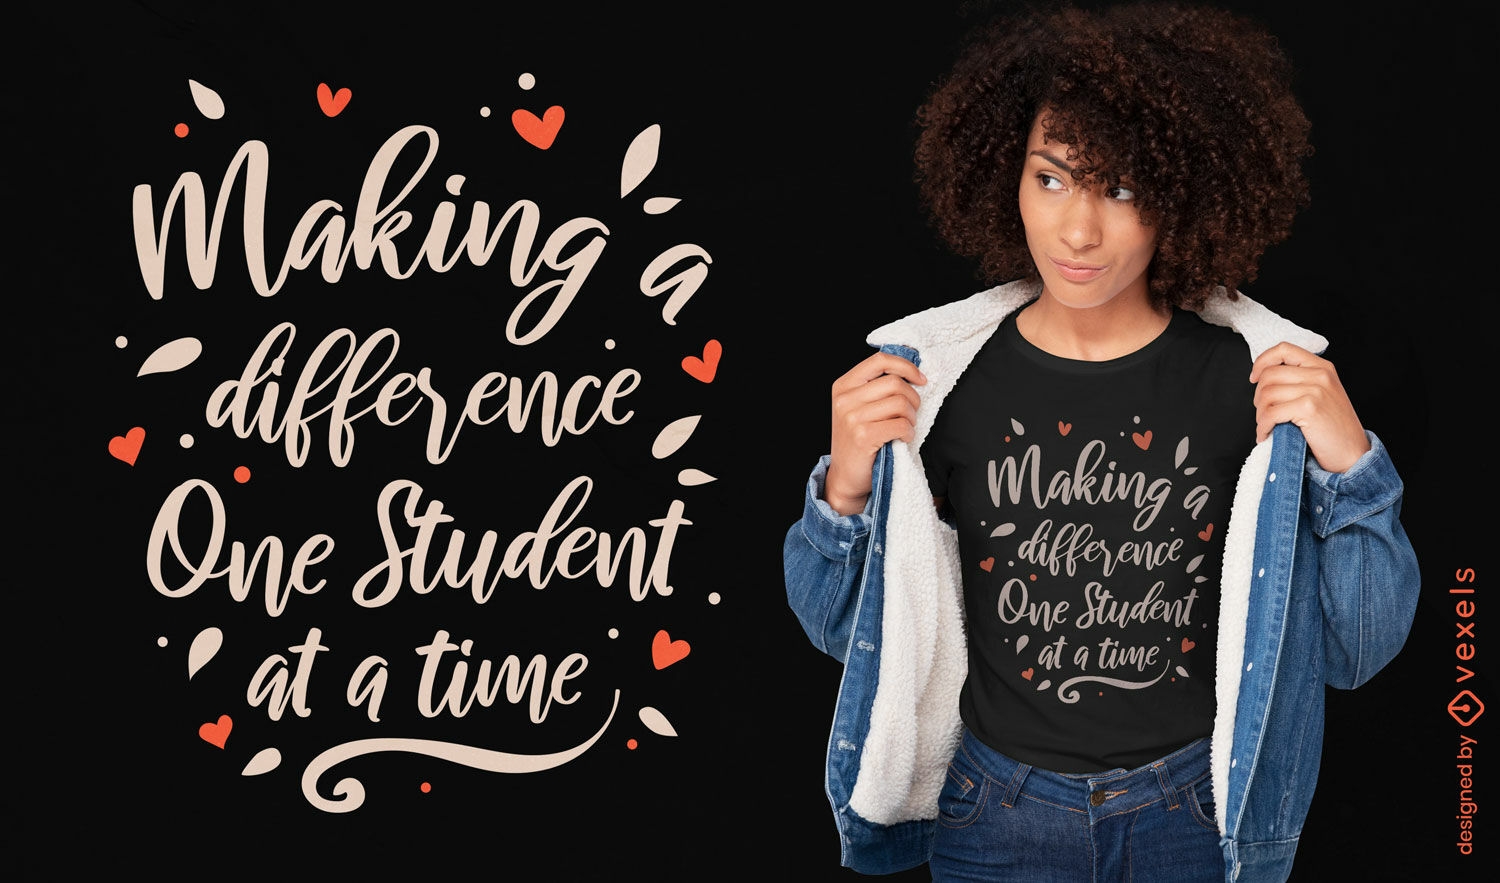 Ein Schüler nach dem anderen einen Unterschied machen, T-Shirt